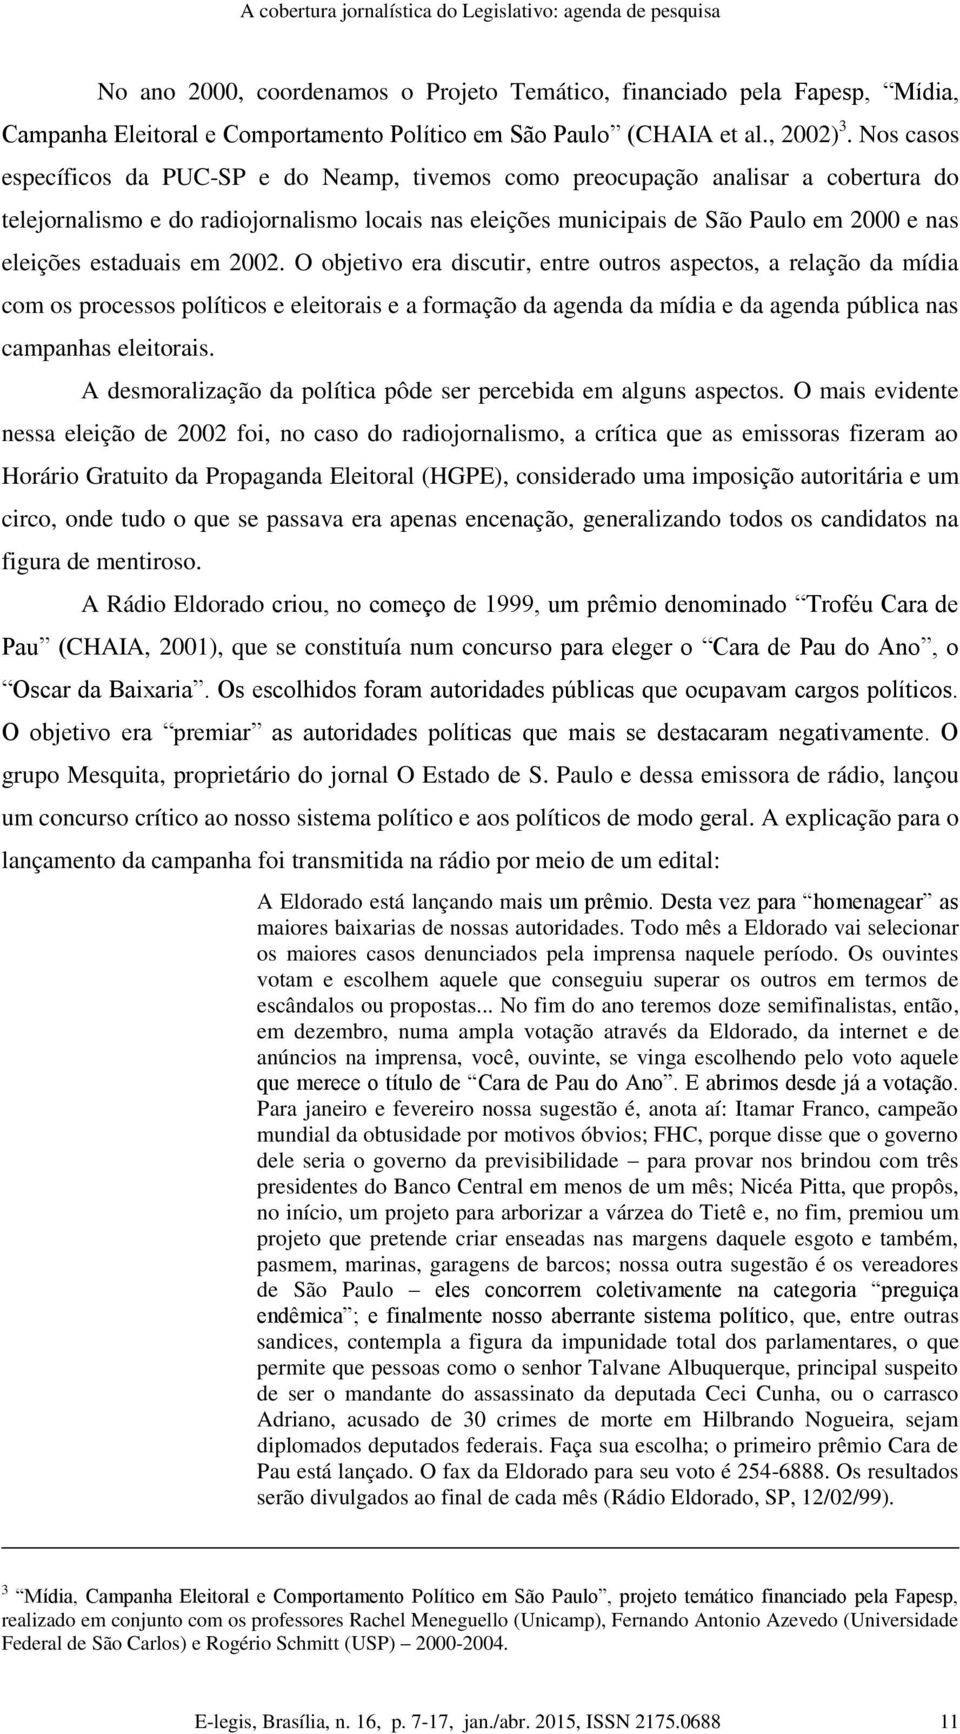 Nos casos específicos da PUC-SP e do Neamp, tivemos como preocupação analisar a cobertura do telejornalismo e do radiojornalismo locais nas eleições municipais de São Paulo em 2000 e nas eleições